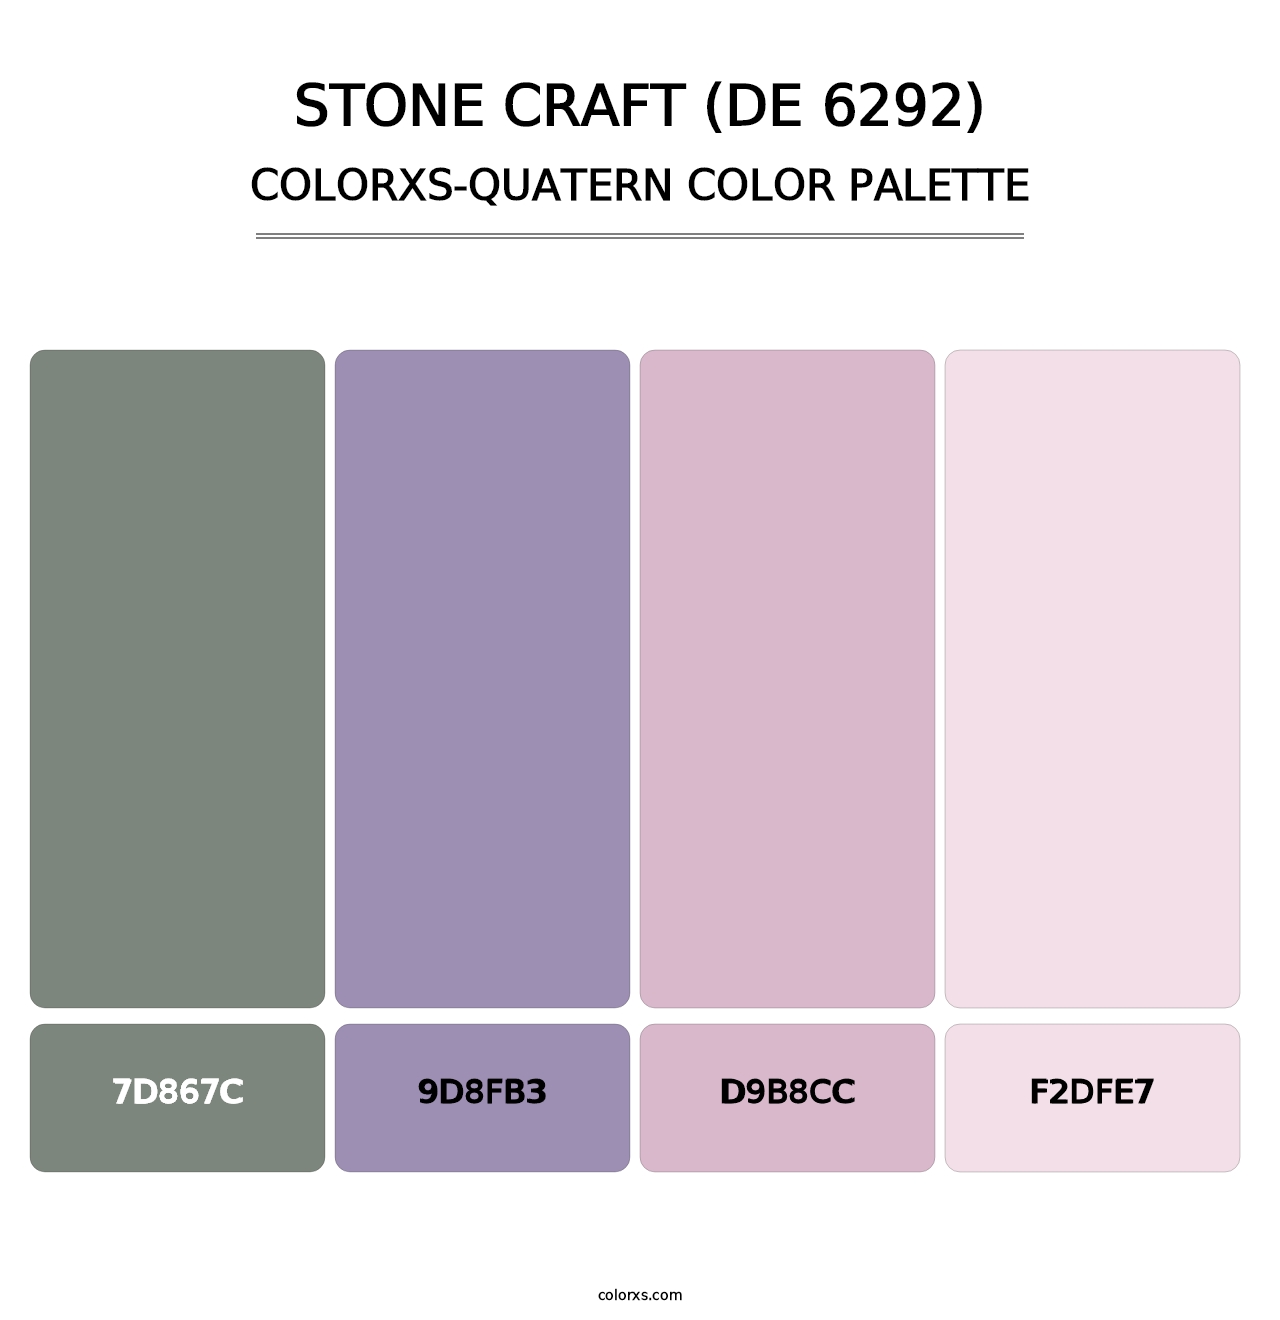 Stone Craft (DE 6292) - Colorxs Quatern Palette